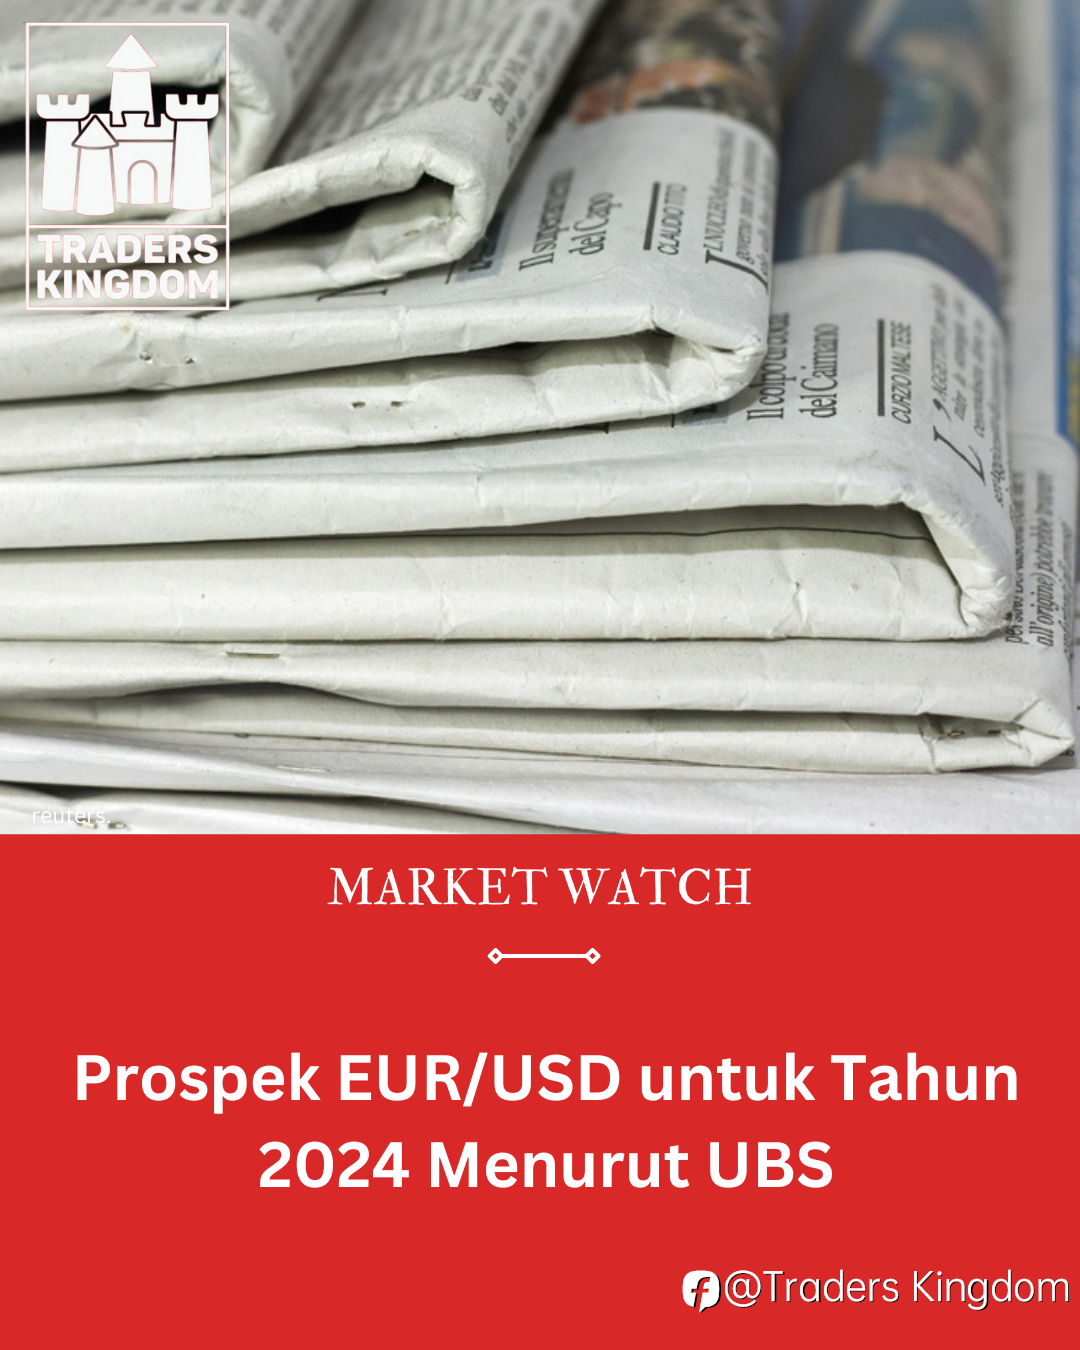 Prospek EUR/USD untuk Tahun 2024 Menurut UBS